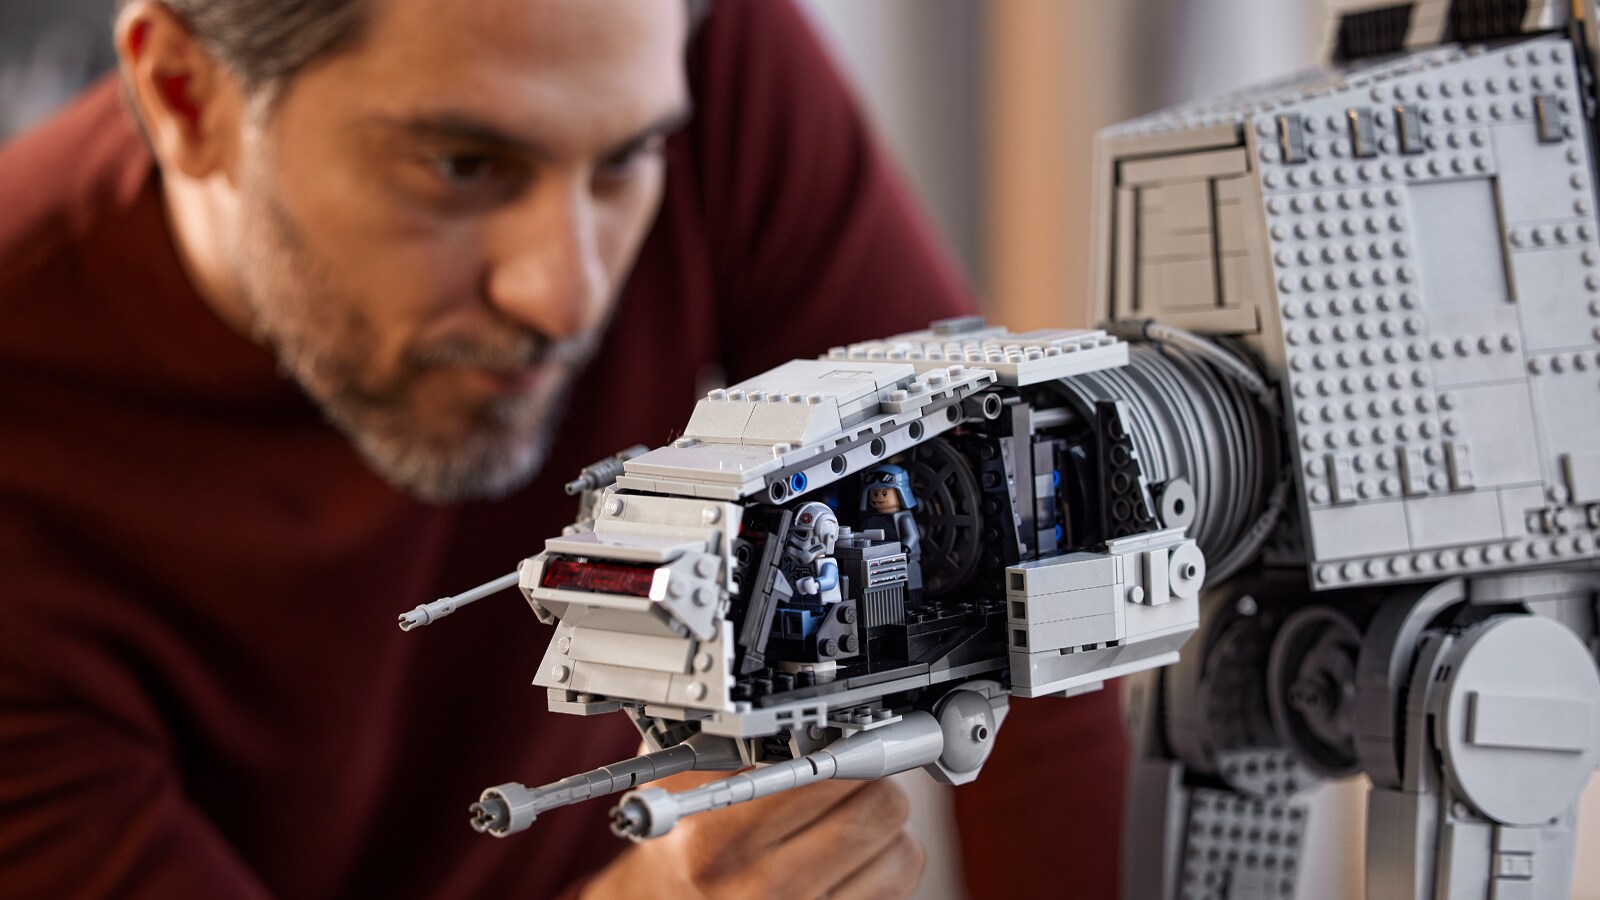 Leyes y regulaciones escalada orden 10 Great LEGO Star Wars Building Sets for Adults | StarWars.com